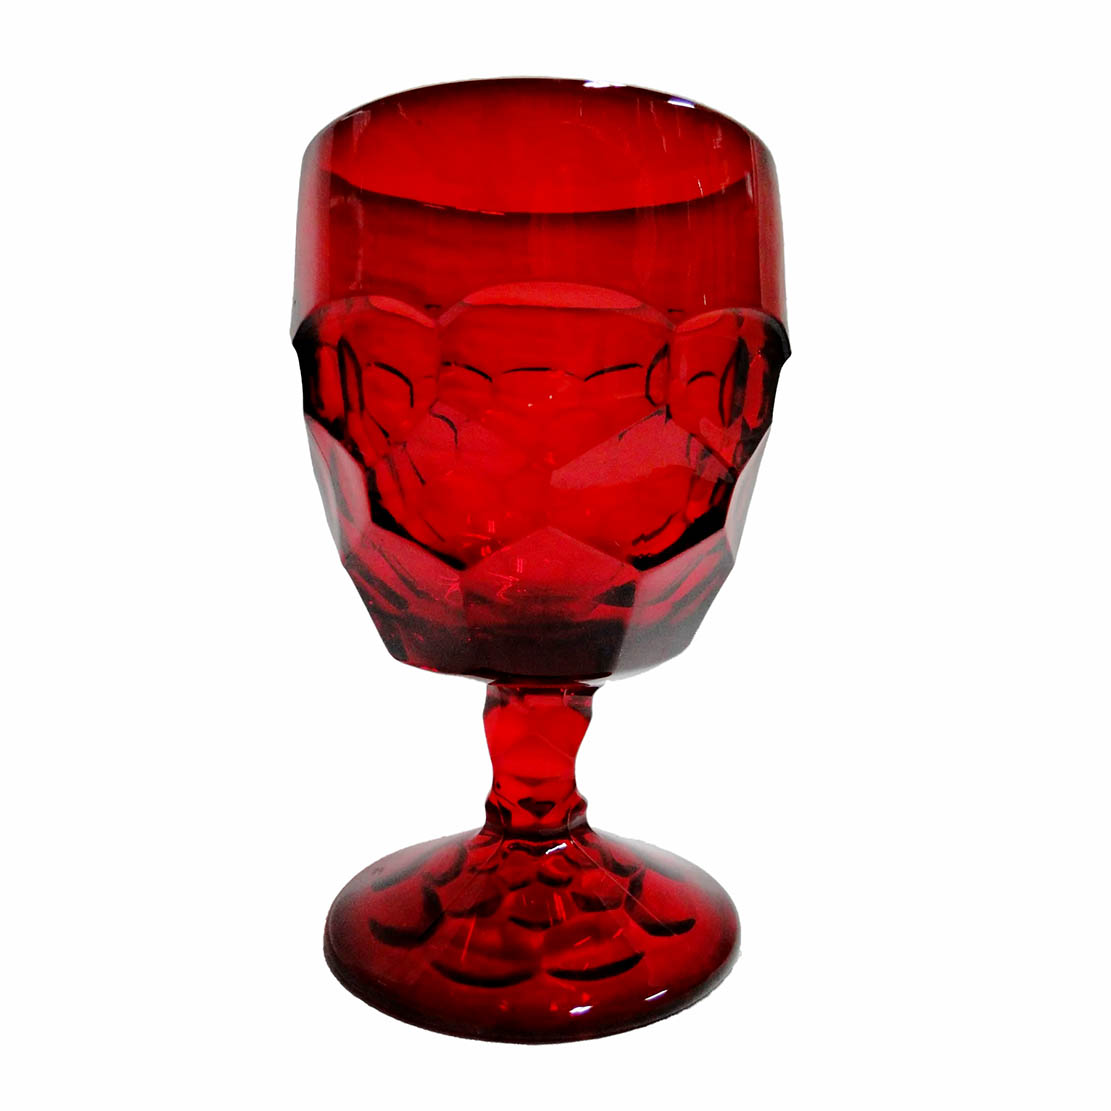 Economy Glass Gems G07 Red – JUMBO